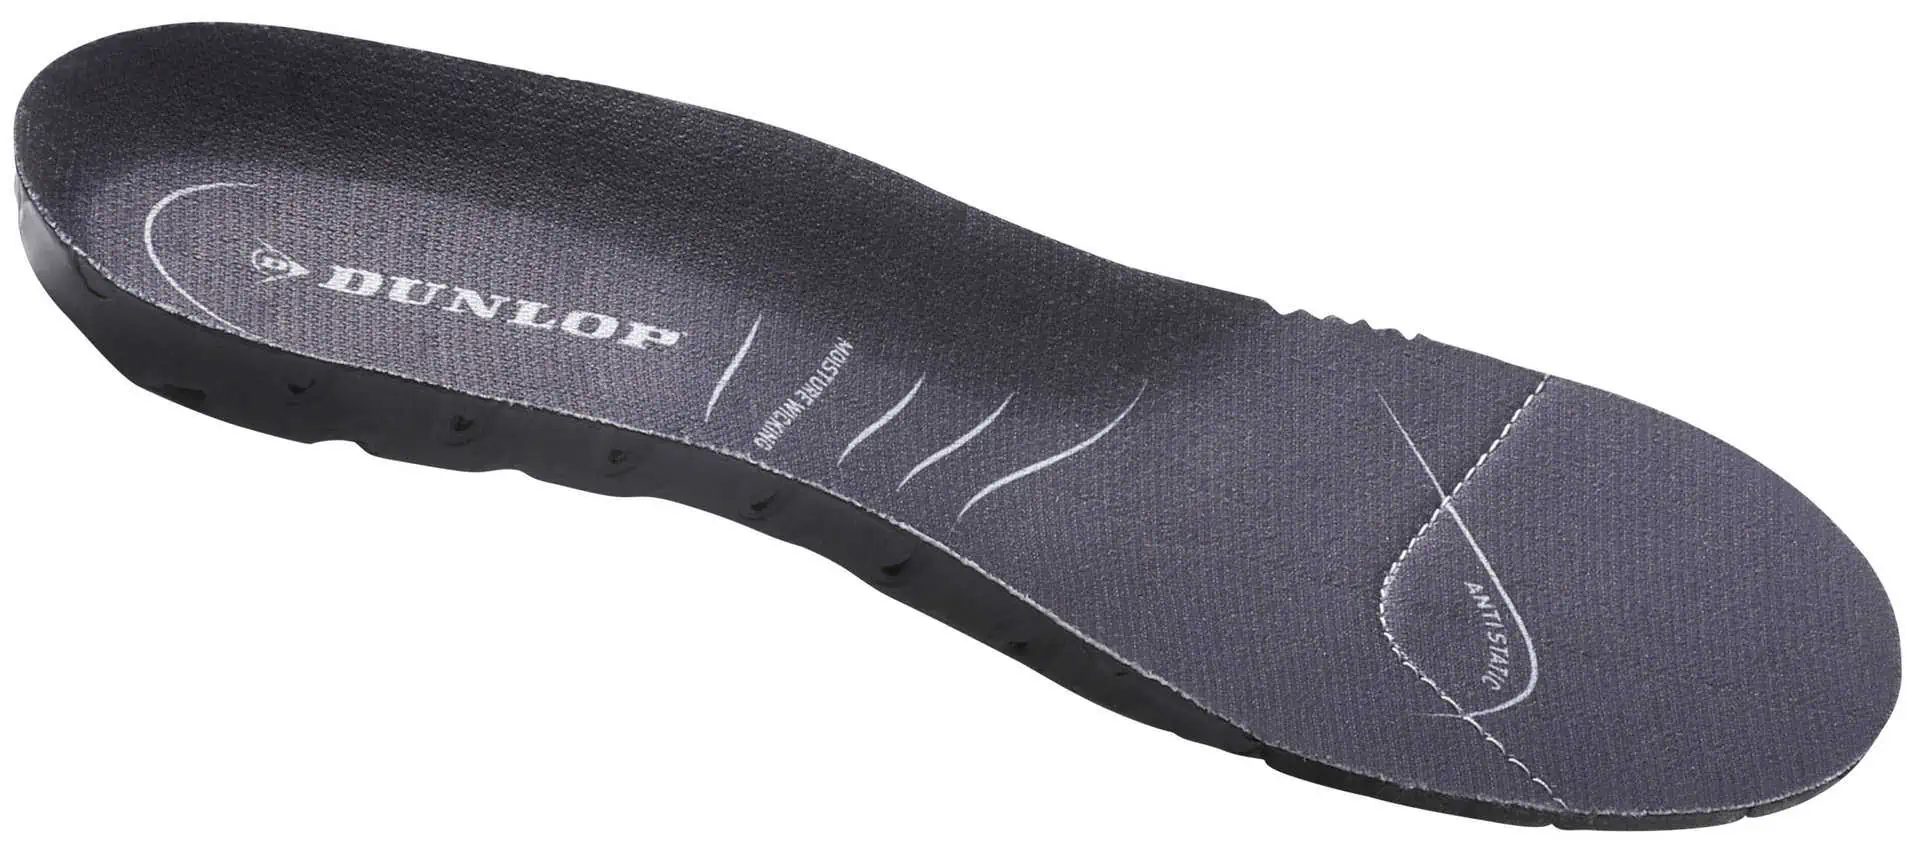 Dunlop Comfort talpbetét (FieldPRO csizmához)